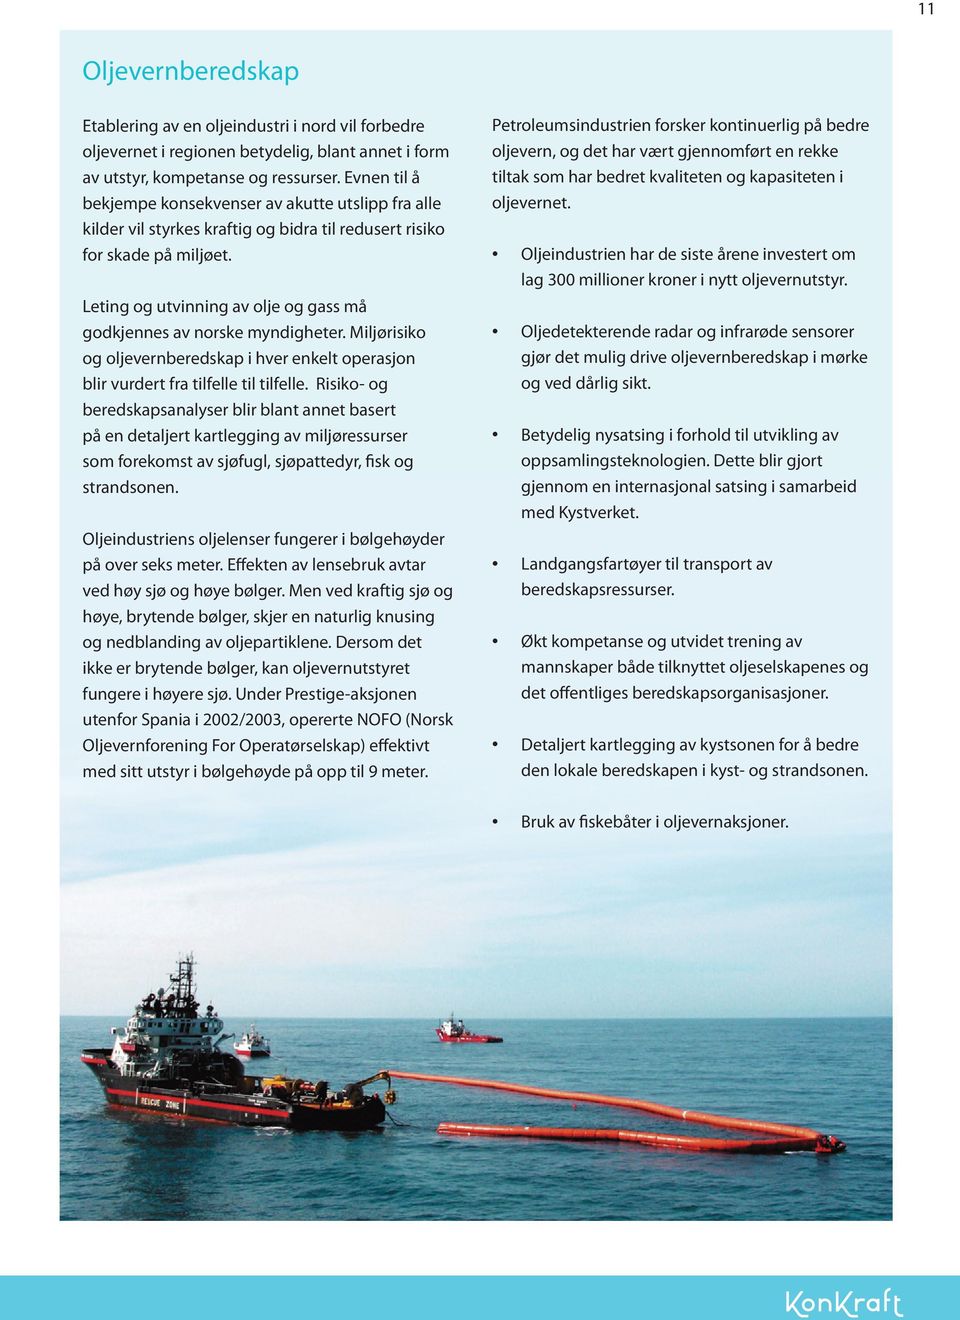 Leting og utvinning av olje og gass må godkjennes av norske myndigheter. Miljørisiko og oljevernberedskap i hver enkelt operasjon blir vurdert fra tilfelle til tilfelle.